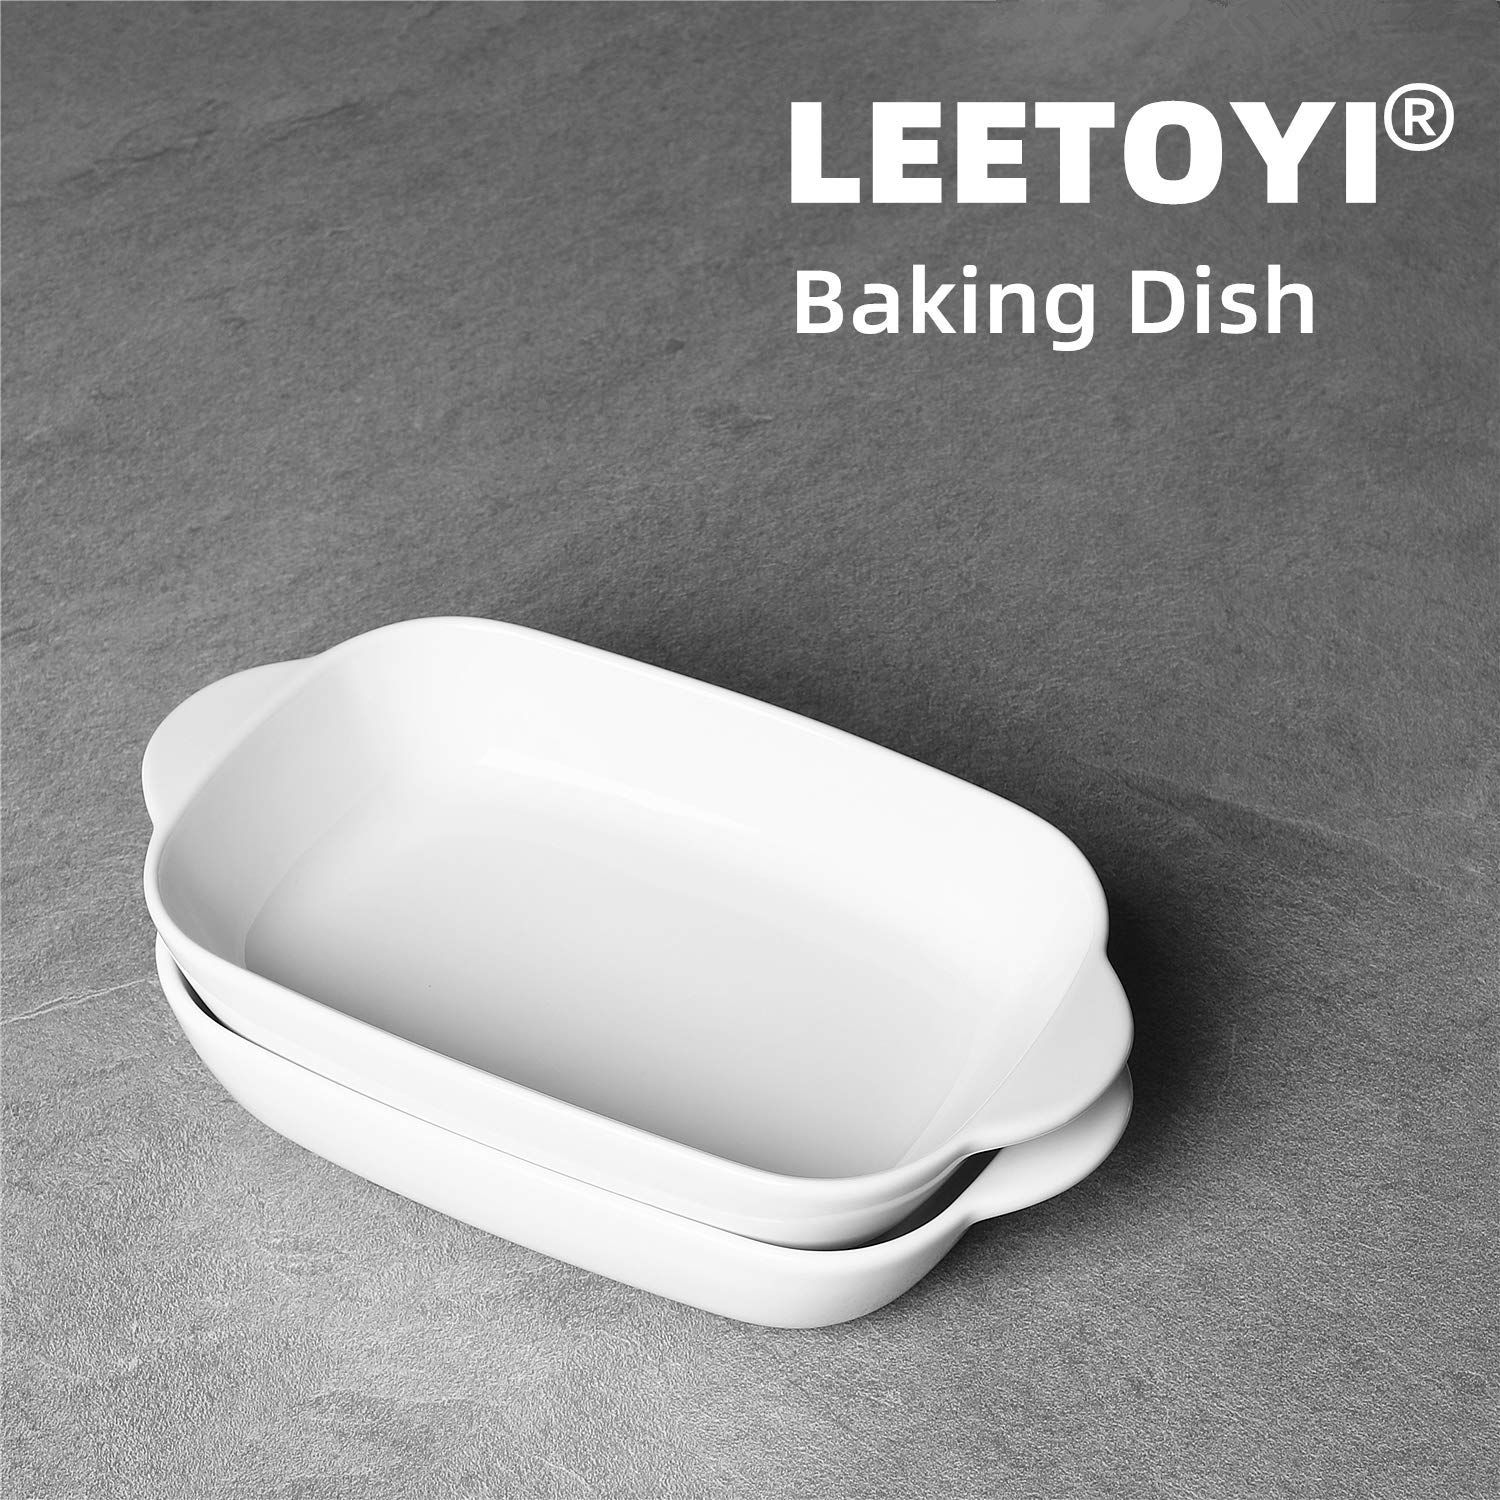 LEETOYI Ceramic 2.8 Quart Baking Dish, 9" x 13",Casserole Dish (White, Set of 2)